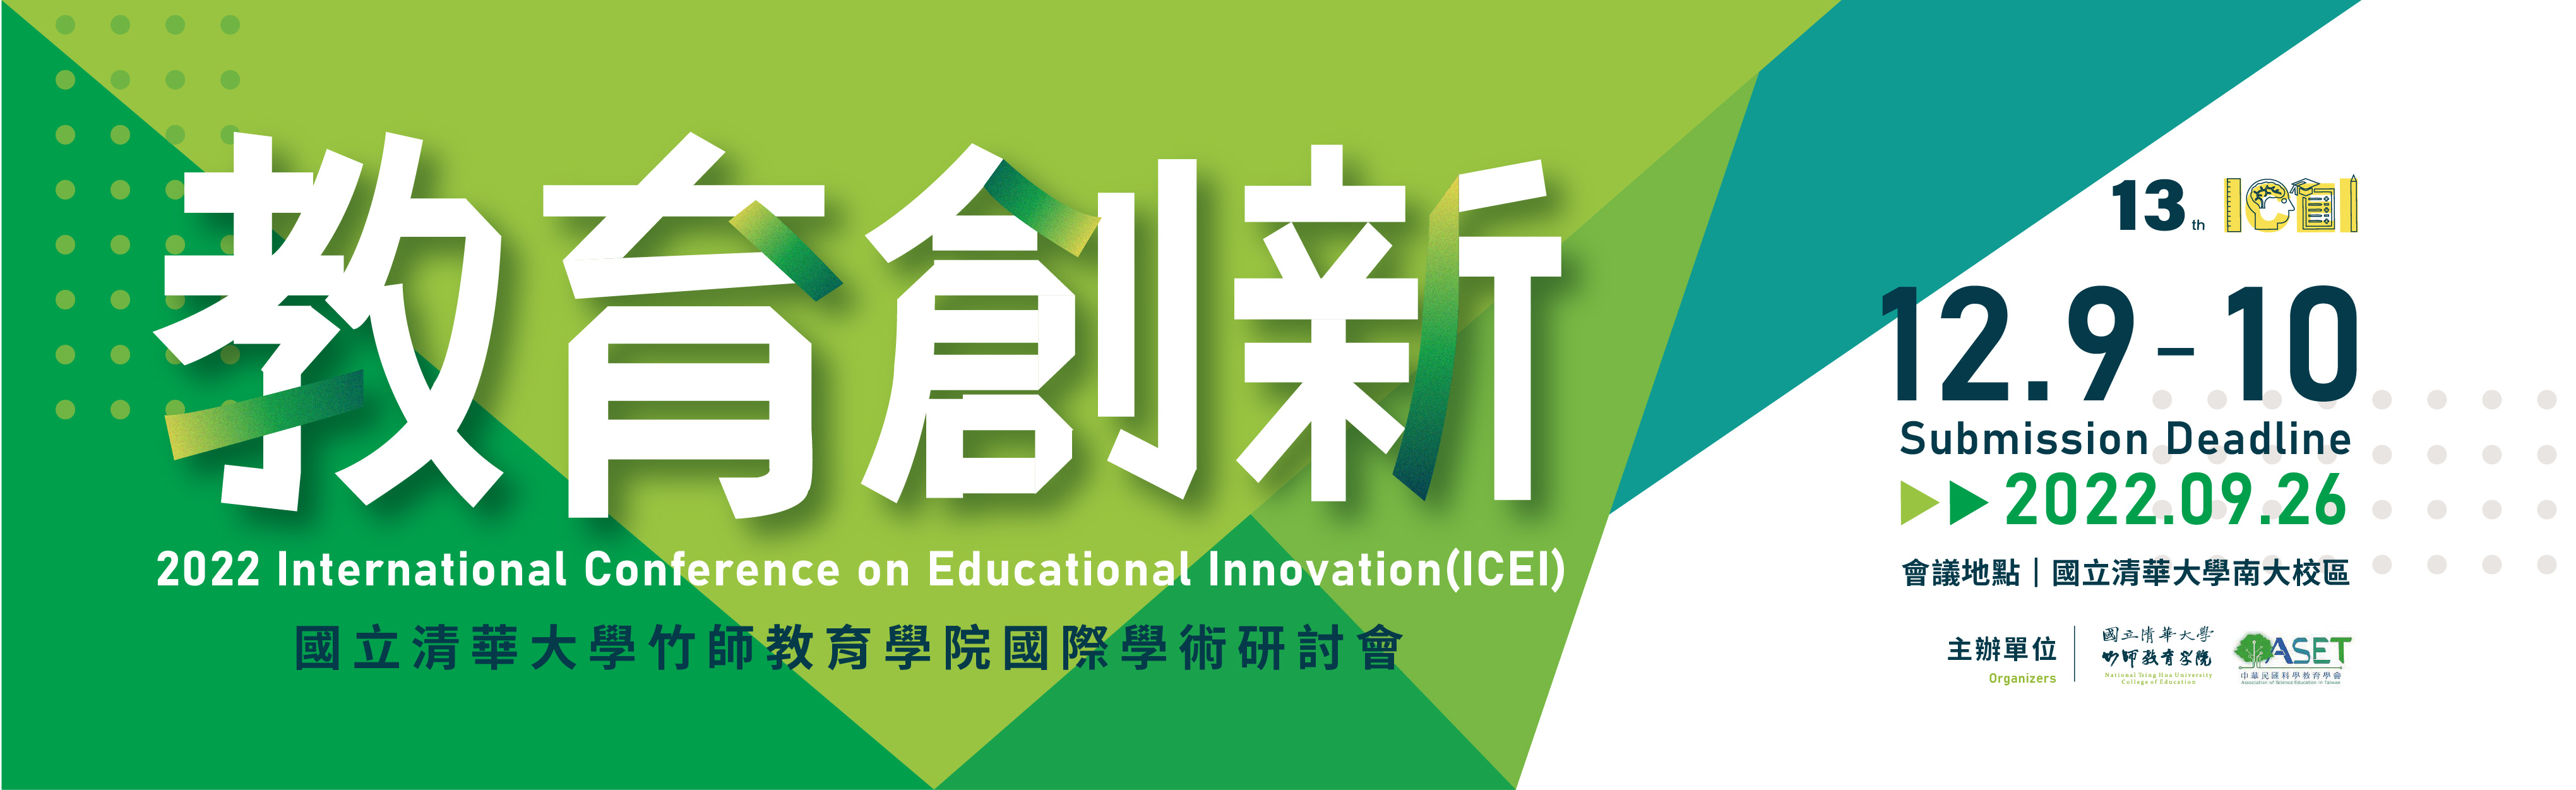 2022教育創新國際學術研討會